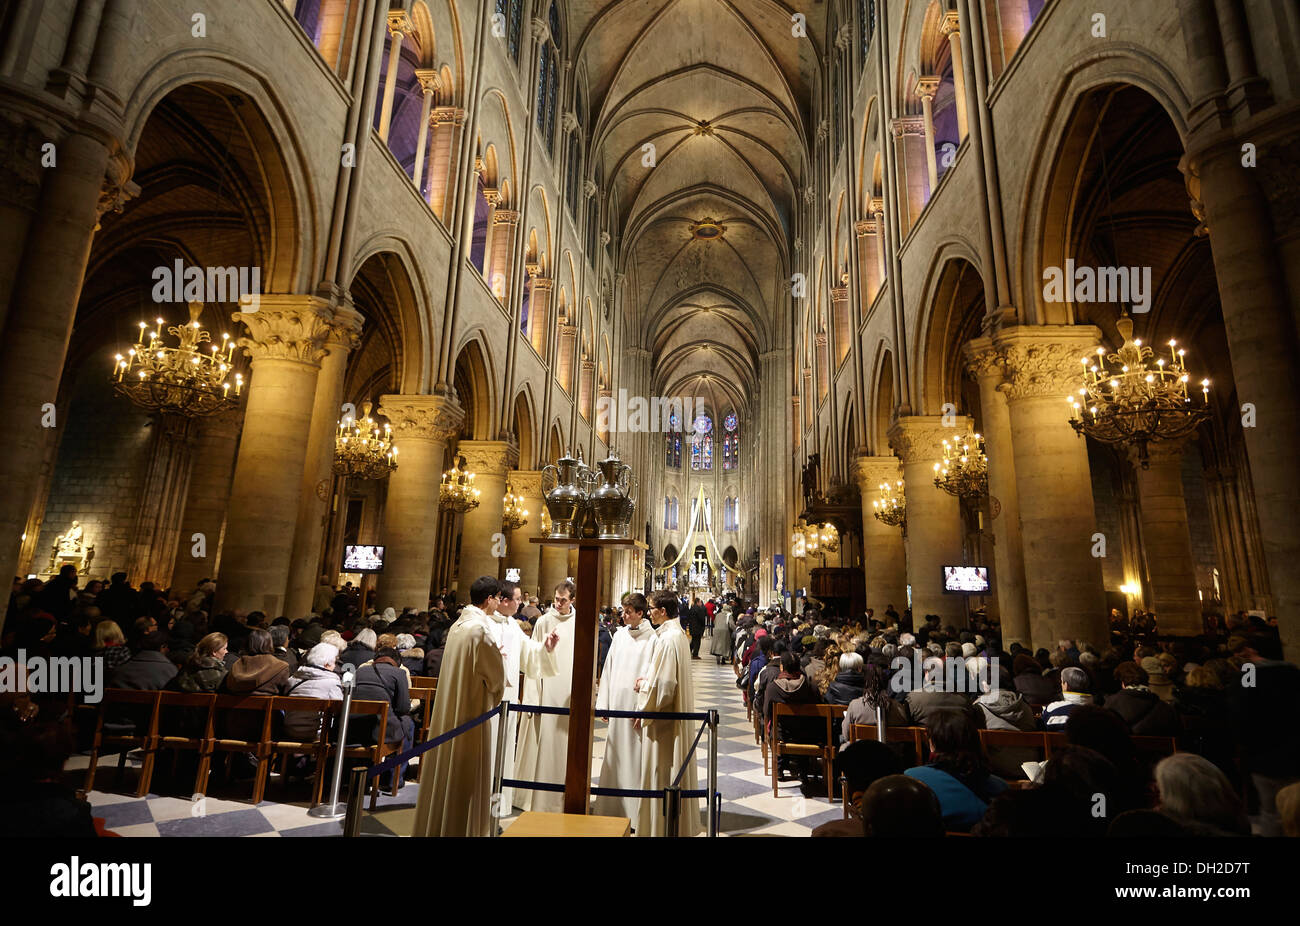 L'intérieur, la cathédrale de Notre-Dame, Paris, France Banque D'Images